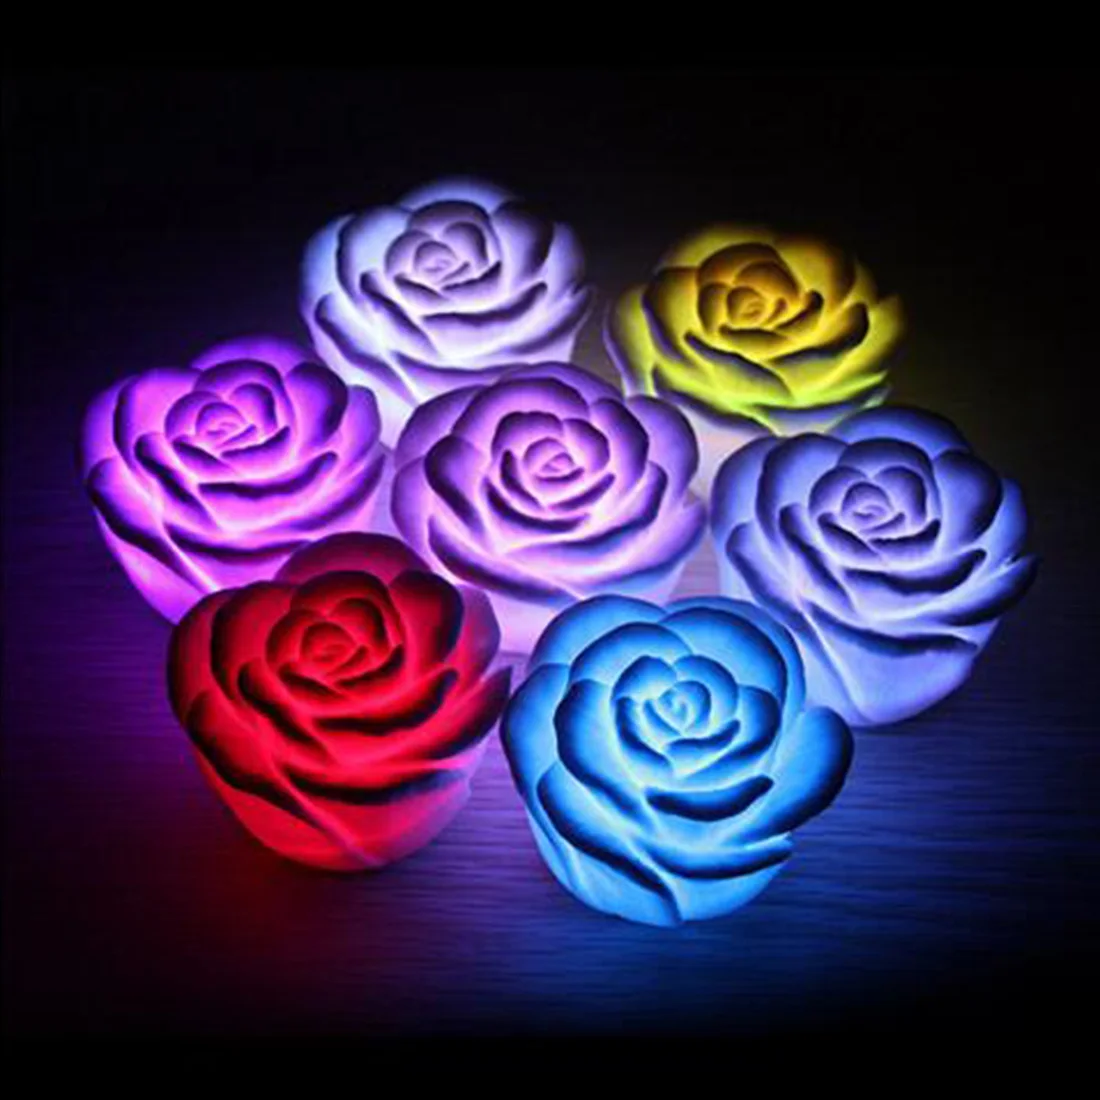 

2018 светодиодная Ночная лампа, романтический ночник с цветком розы, лампа с изменением цвета, светодиодные ночники, дизайн интерьера